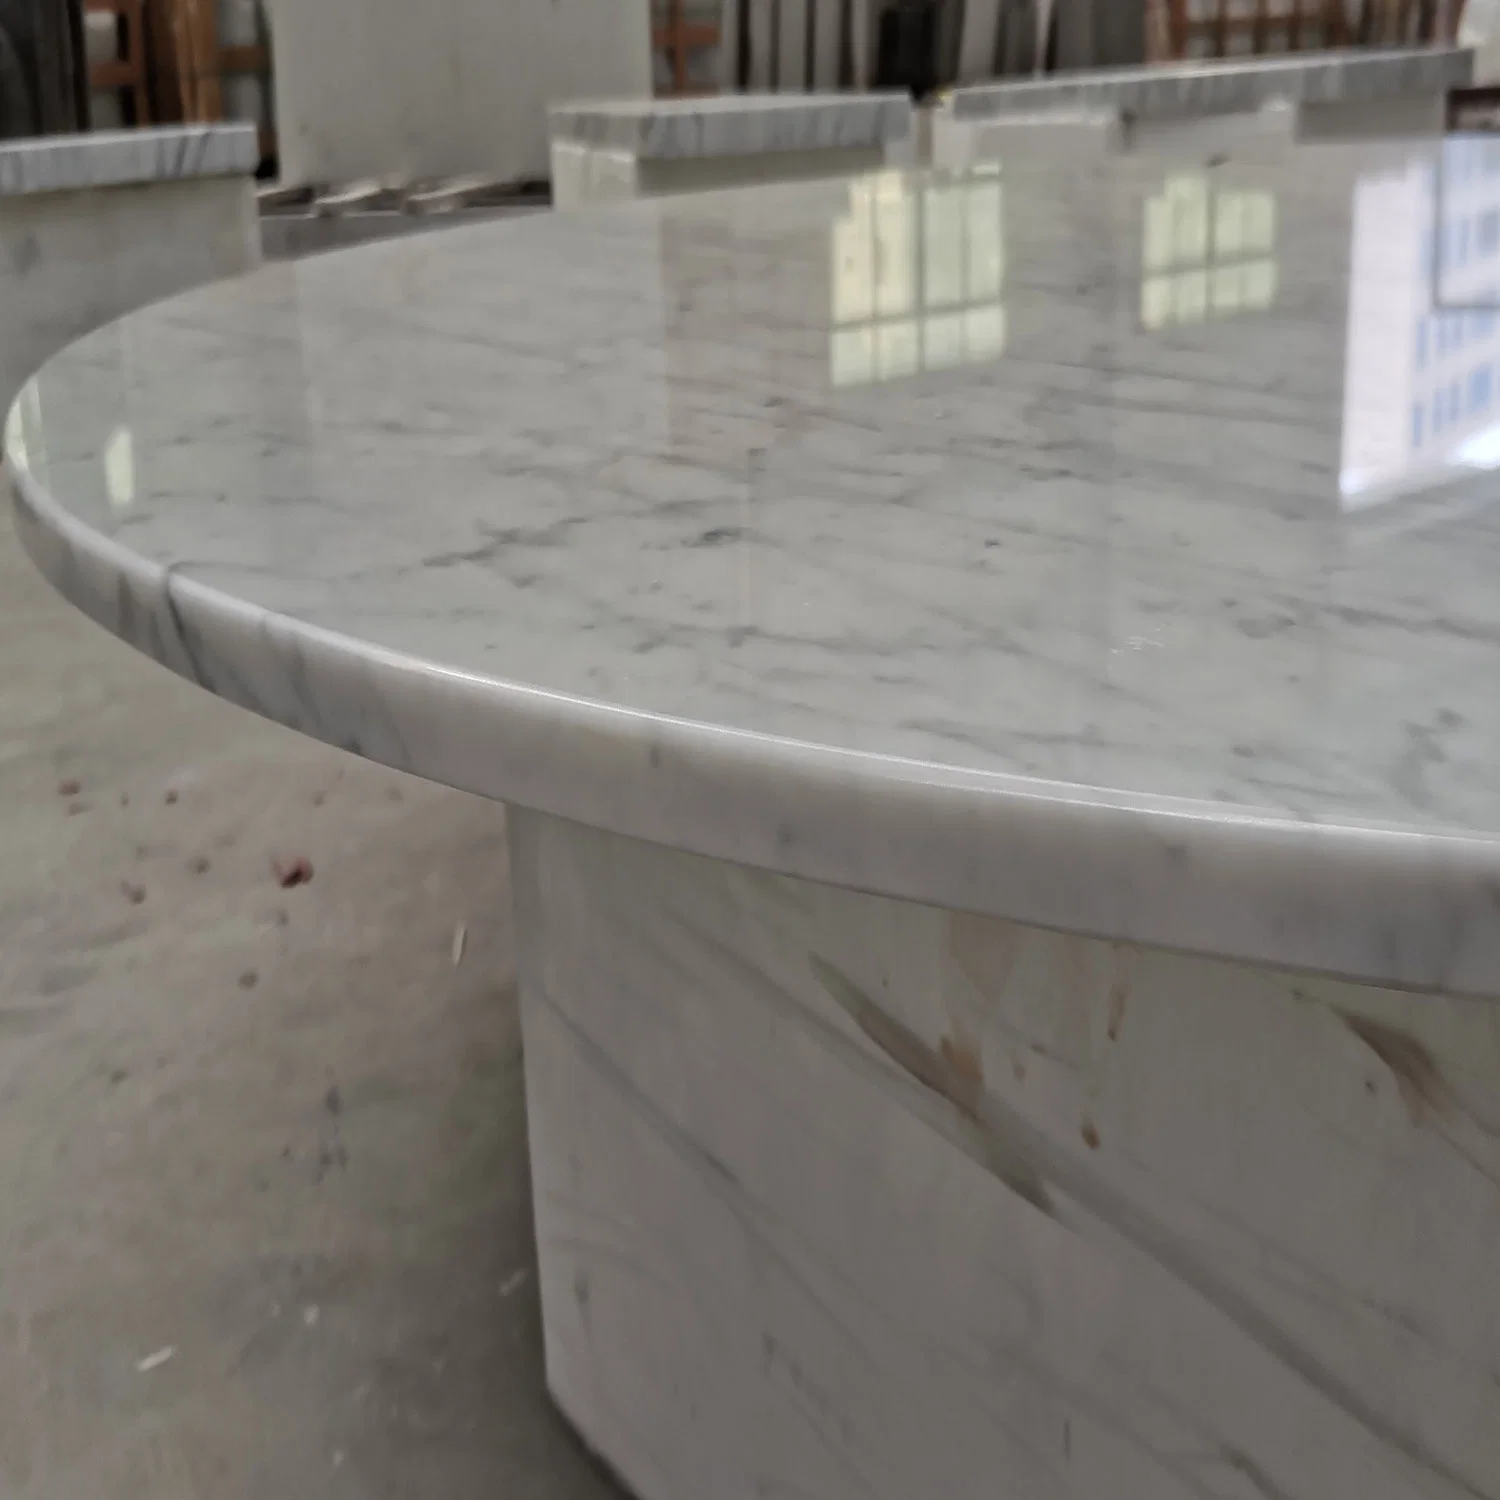 Proyecto del Hotel Italiano Bianco Carrara Mesa de Piedra Blanca Contador Arriba Encimeras de mármol